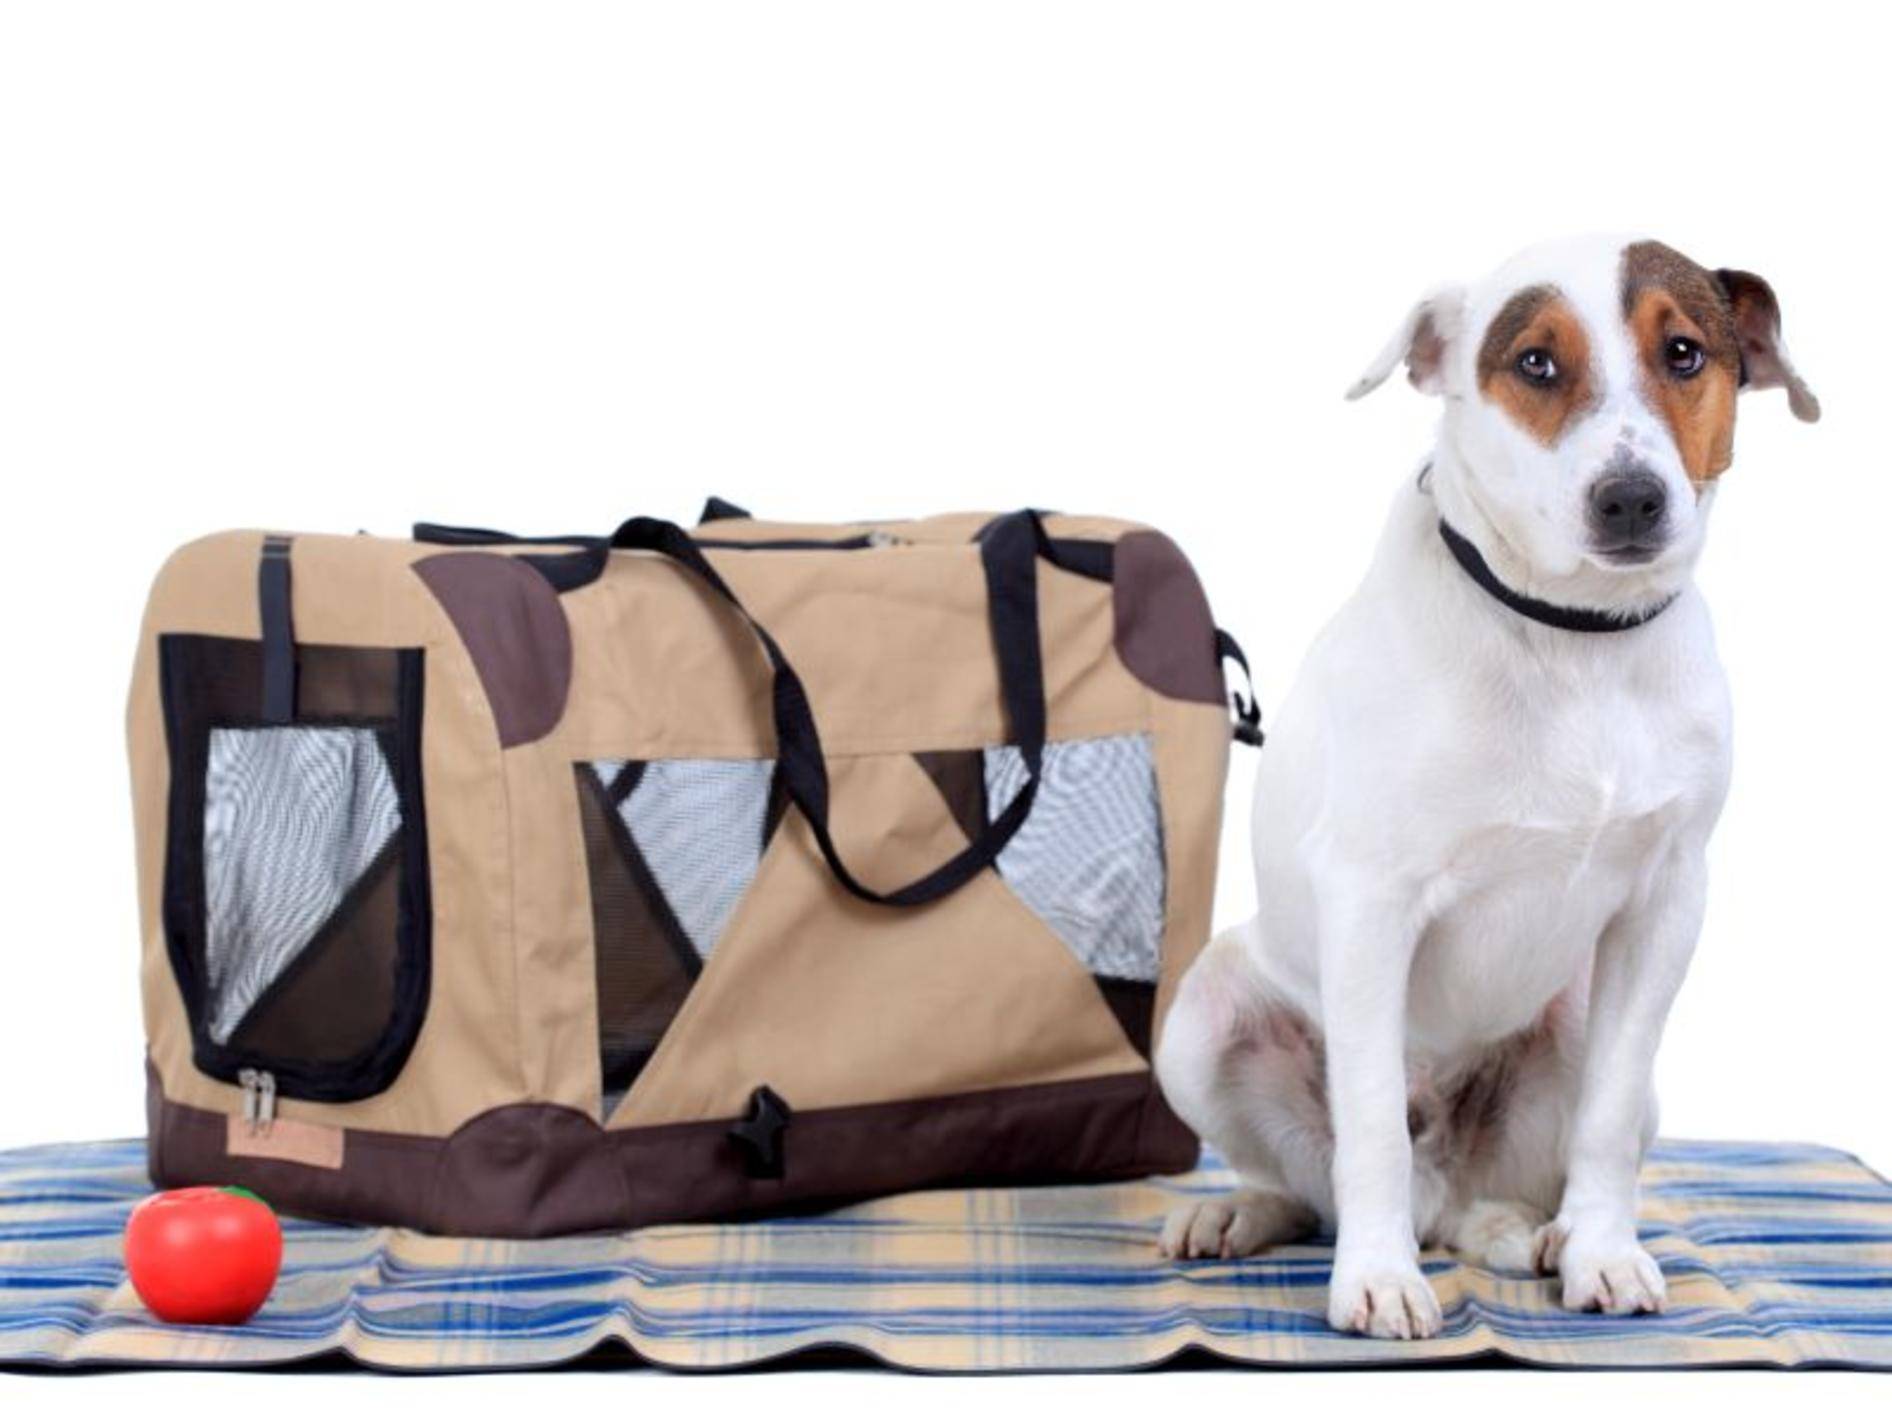 Flugpaten ermöglichen Hunden die Reise ins neues Zuhause – Bild: Shutterstock / Nikola Spasenoski